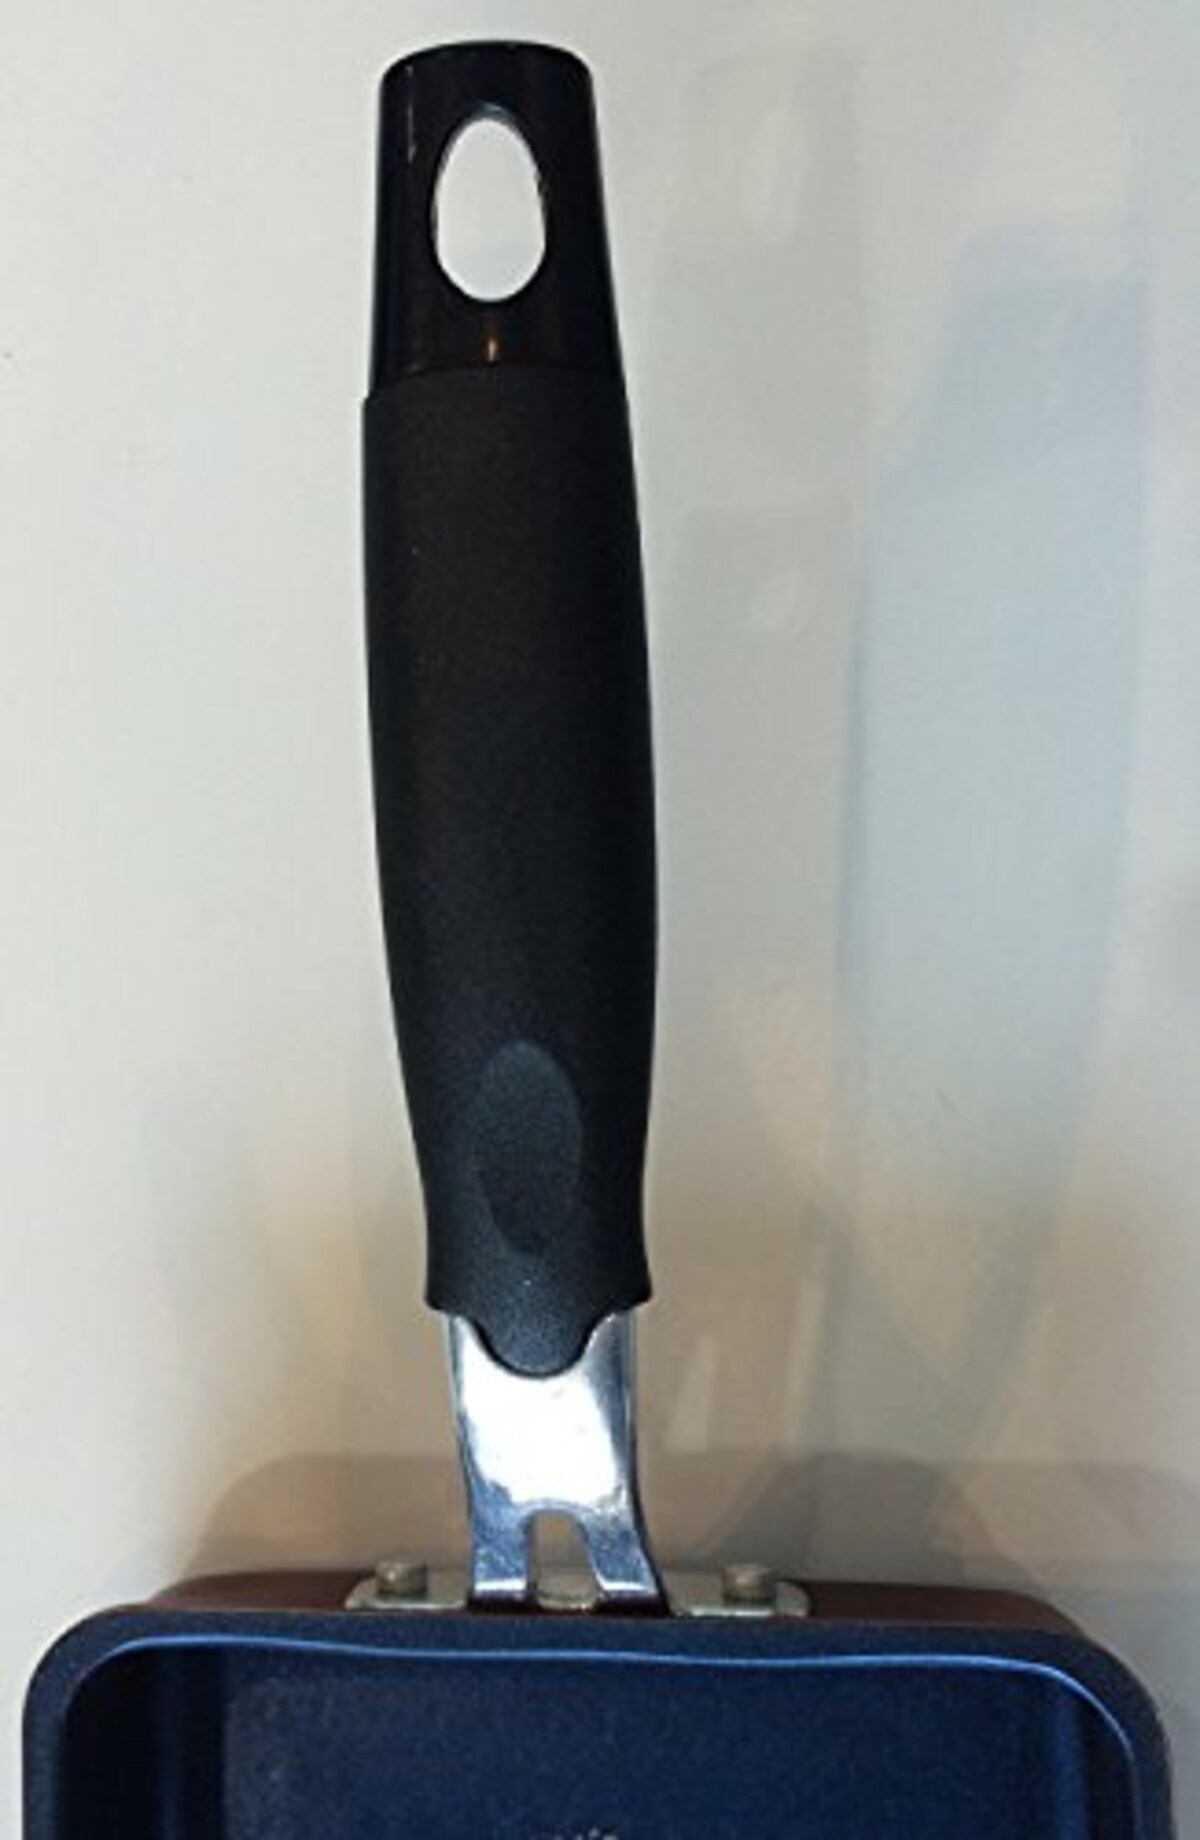  パール金属 卵焼き フライパン 13×18cm IH対応 玉子焼き器 ライズ ブルーダイヤモンドコート HB-323 ブラック画像5 